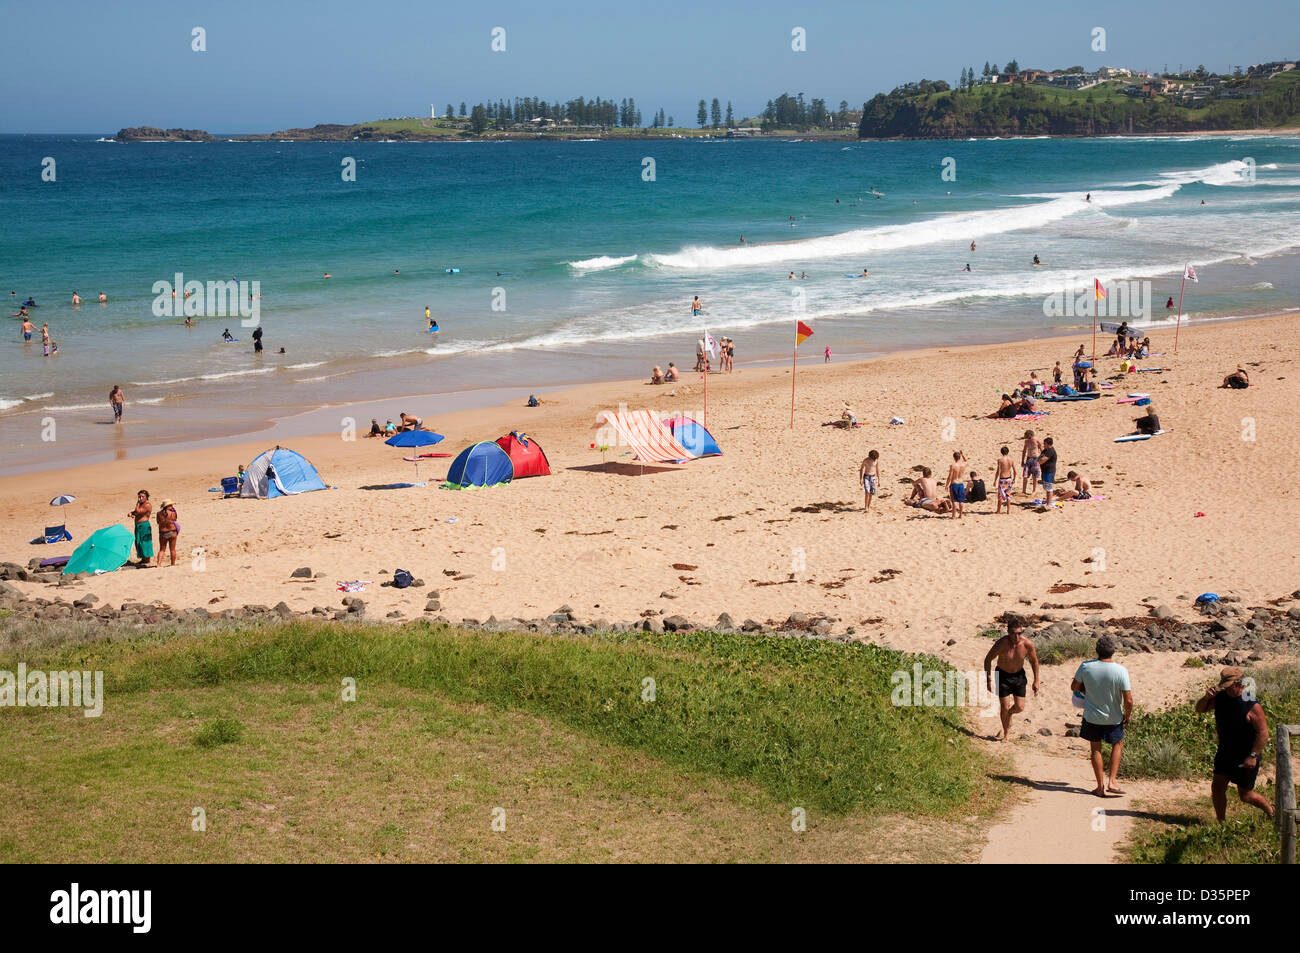 Plage de Bombo situé très près de la côte sud de la magnifique ville balnéaire de Kiama,région Illawarra South Coast NSW Australie Banque D'Images